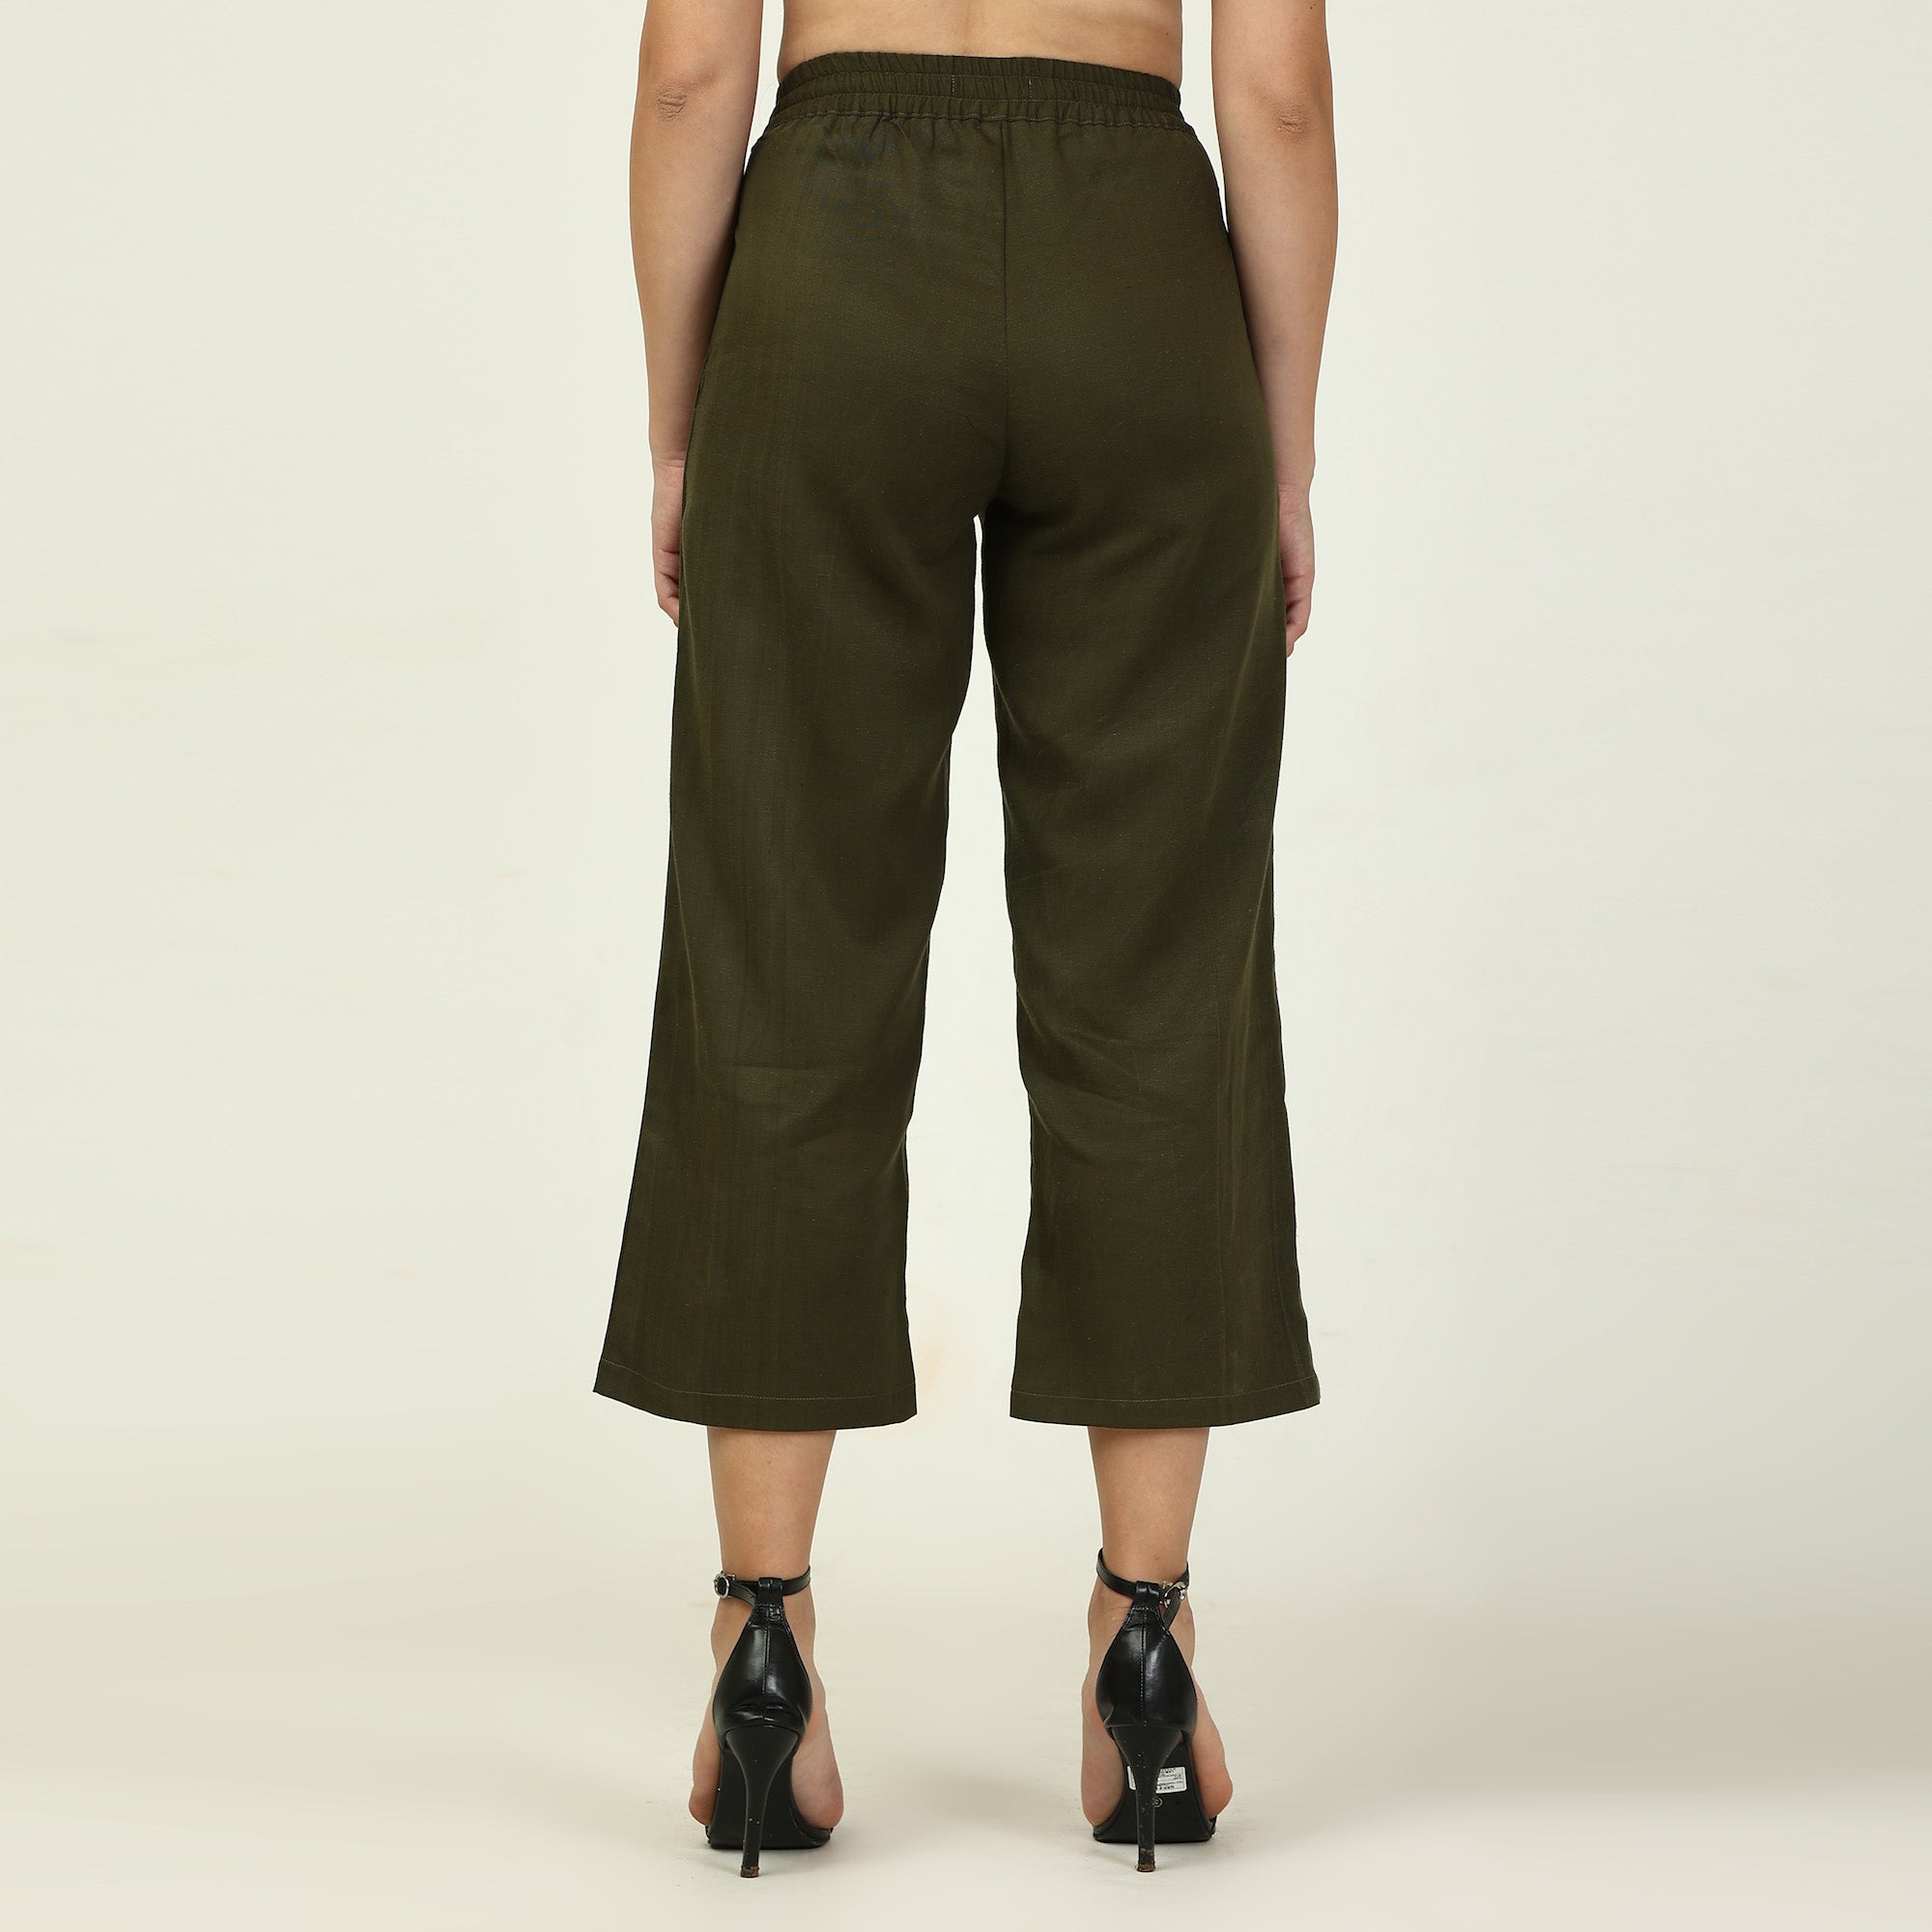 Dakota Set of 3 - Long Shirt, Inner & Pants - Olive